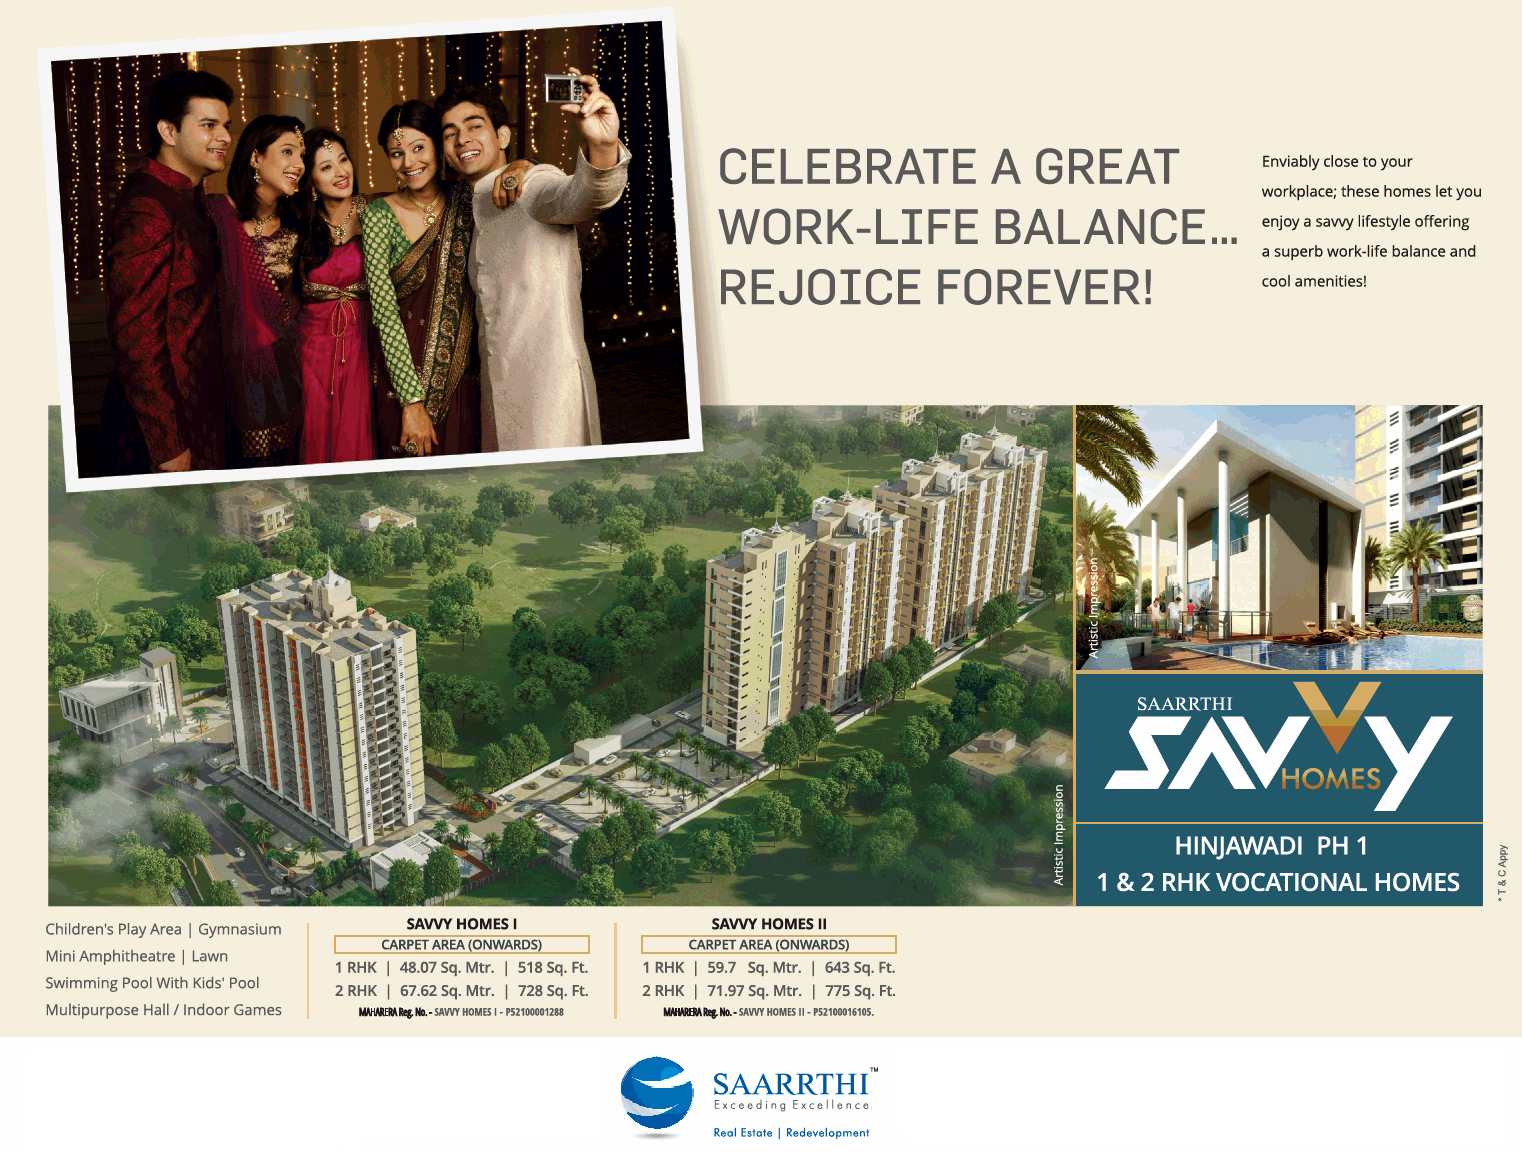 Celebrate a great work life balance at Saarrthi Savvy Home in Hinjawadi, Pune Update